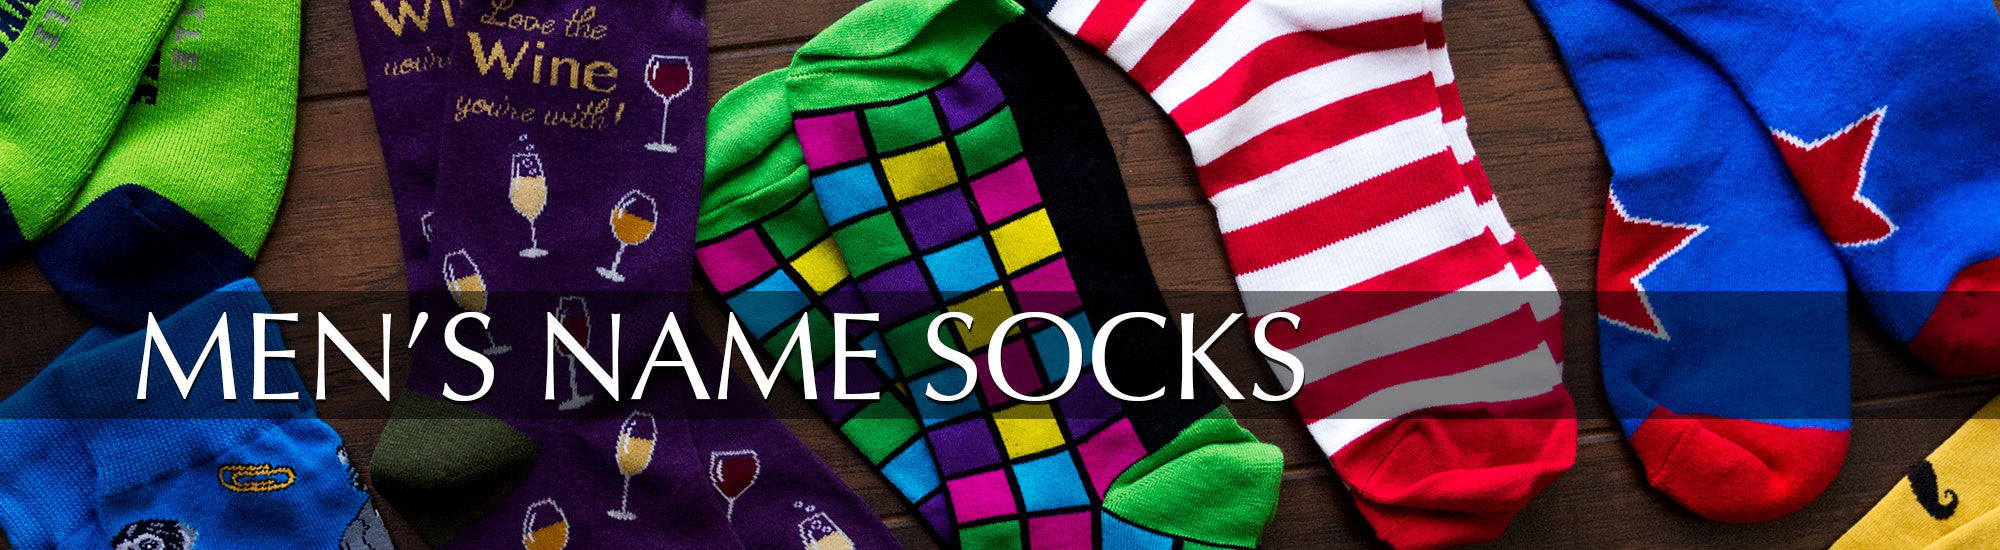 MENS NAME SOCKS – Sock Market